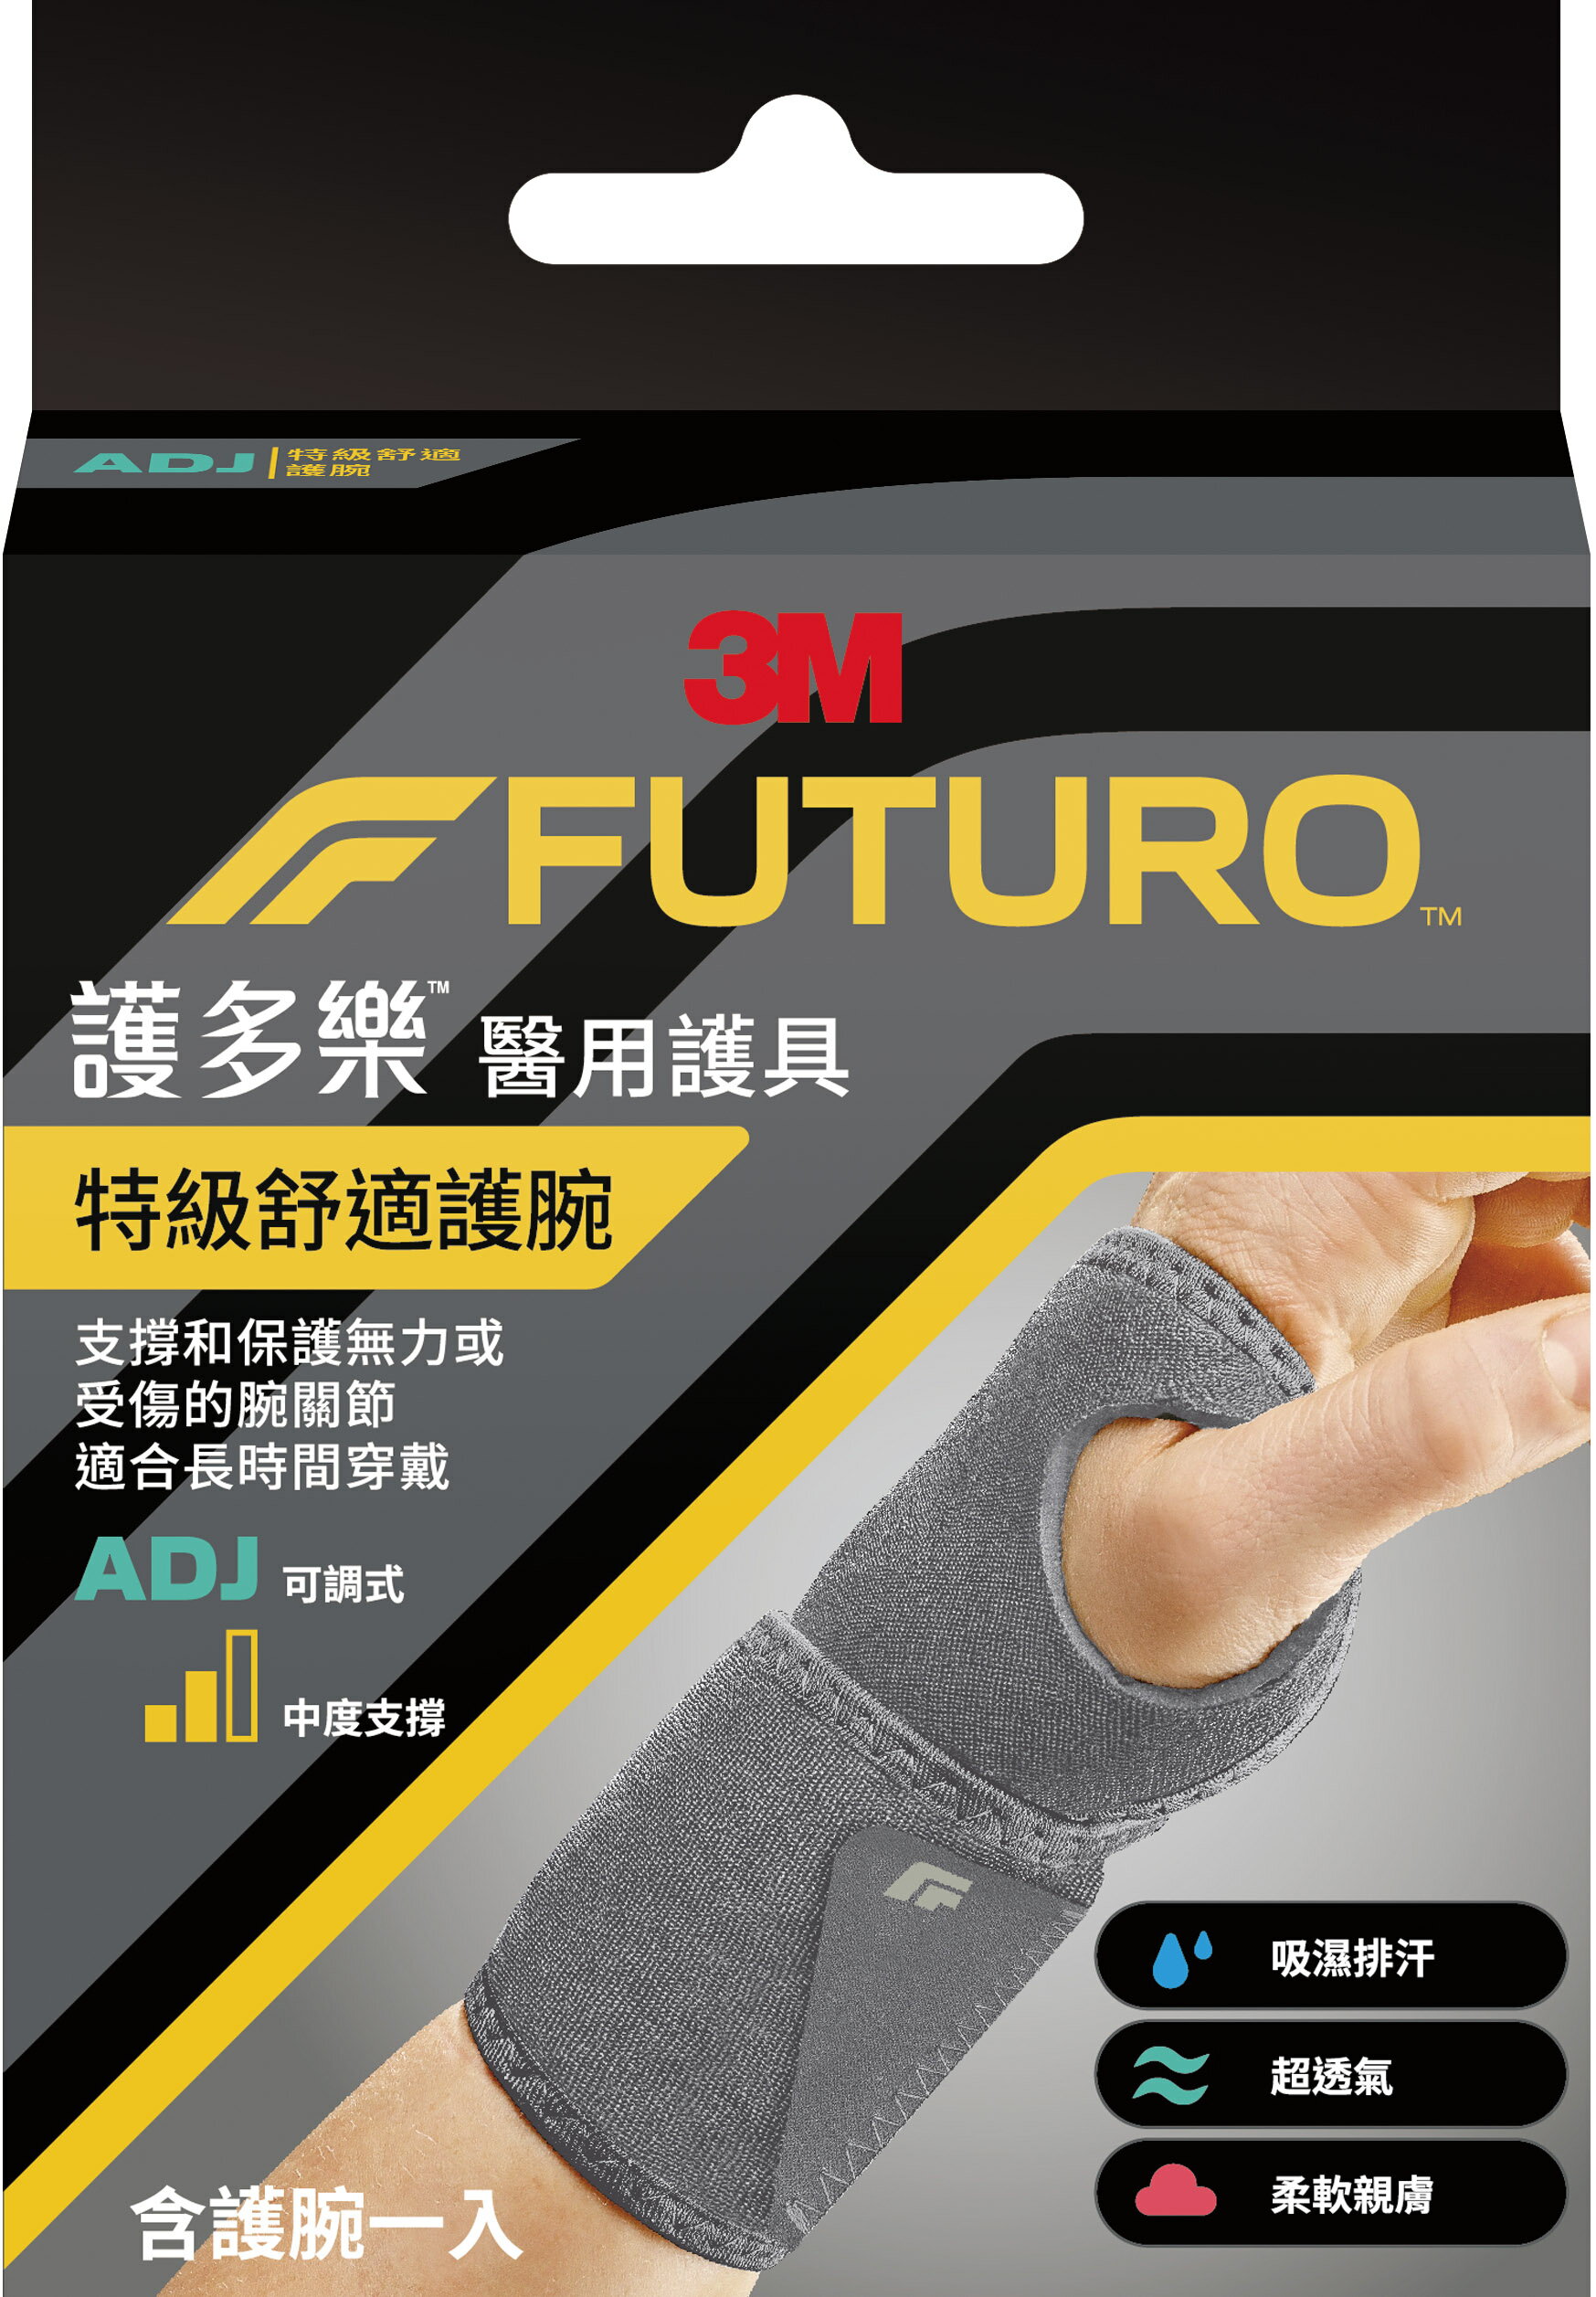 【醫護寶】3M-FUTURO 護多樂 特級舒適護腕 適合長時間穿戴 醫用護具